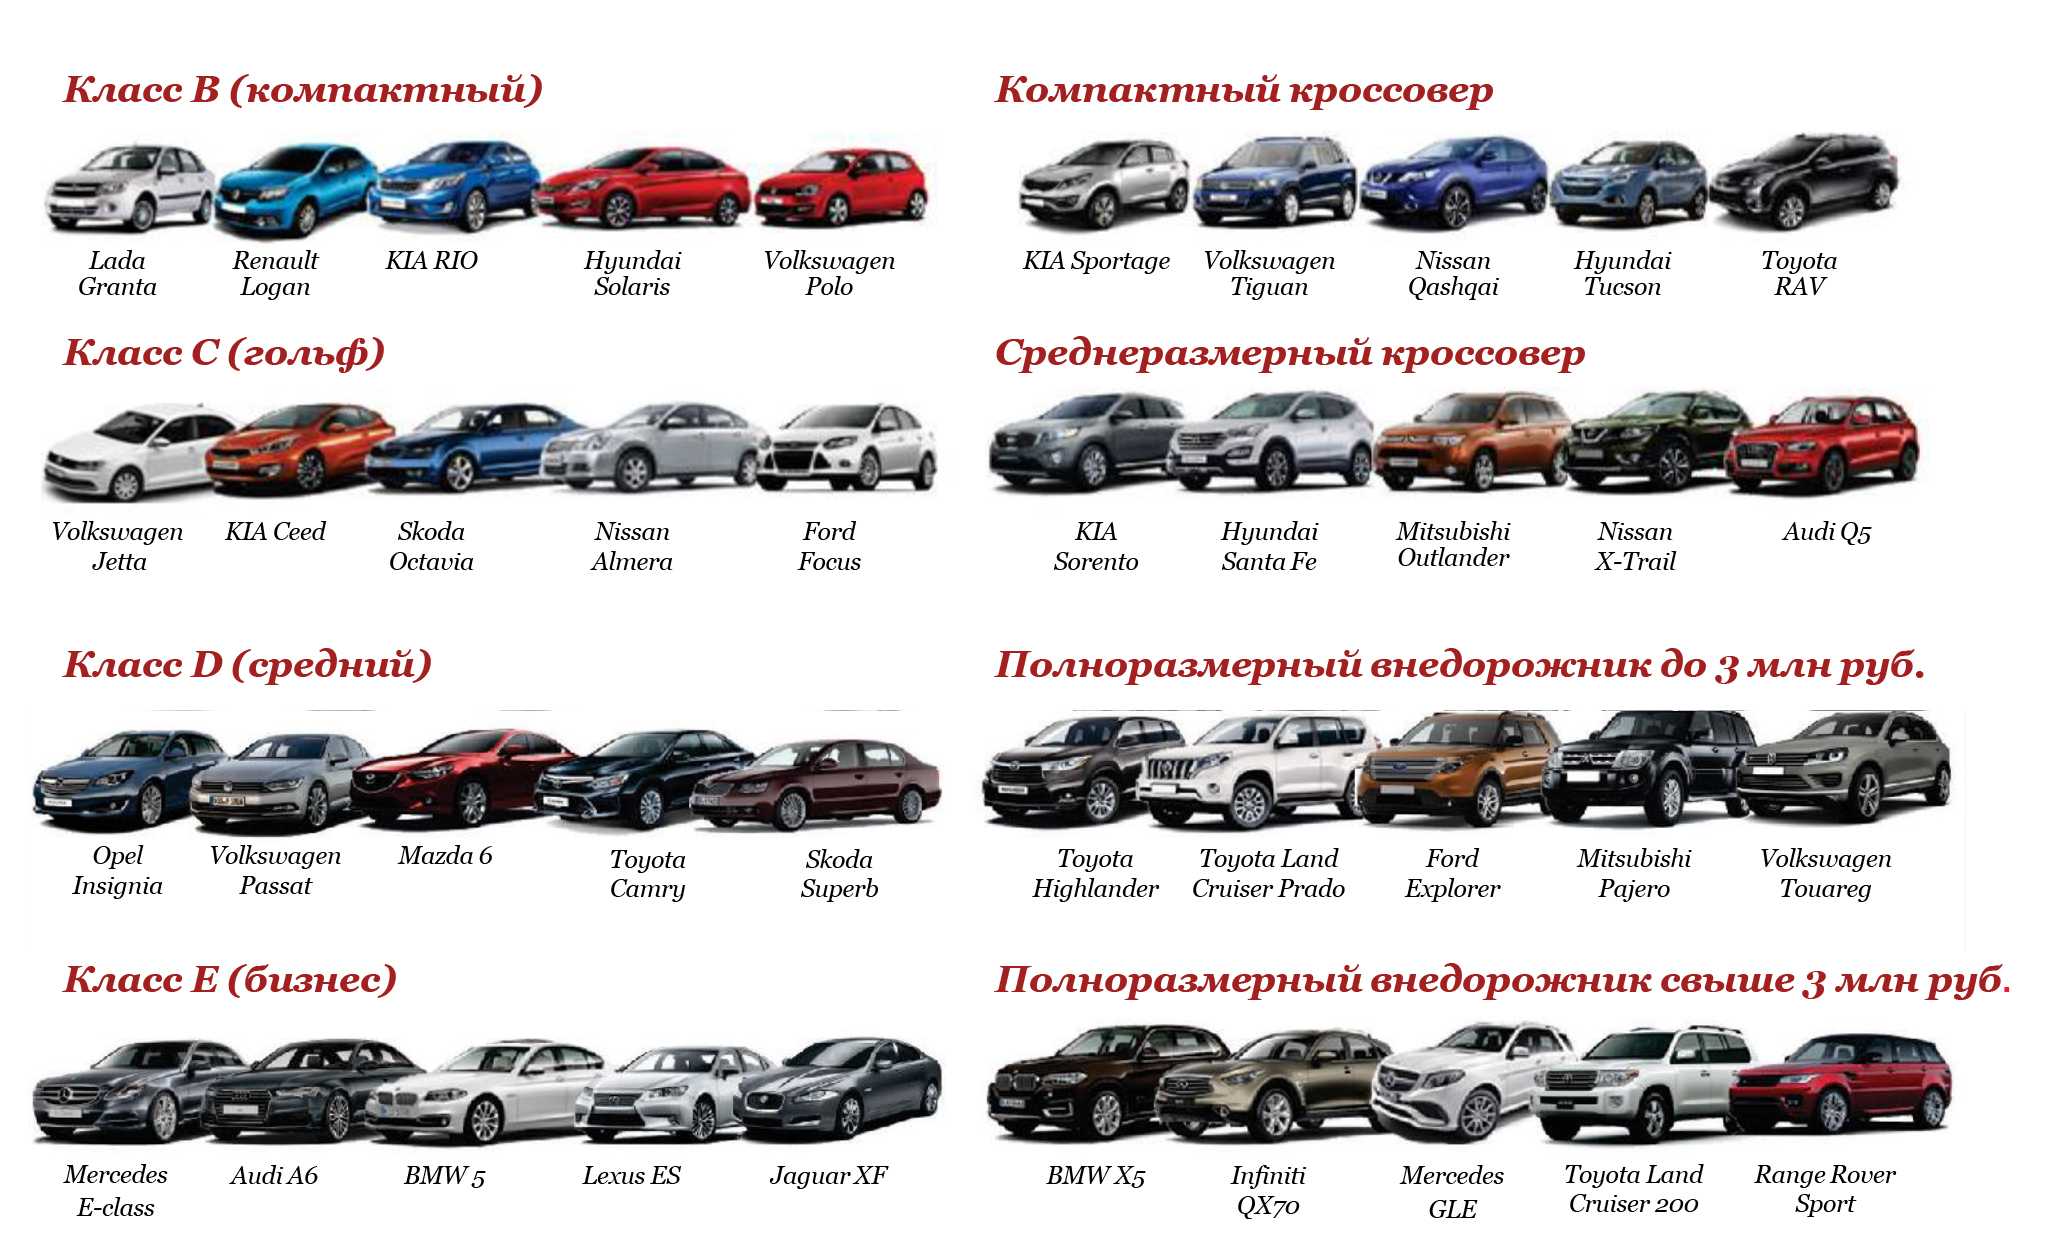 Renault clio 2013 - 2019 - вся информация про рено клио iv поколения